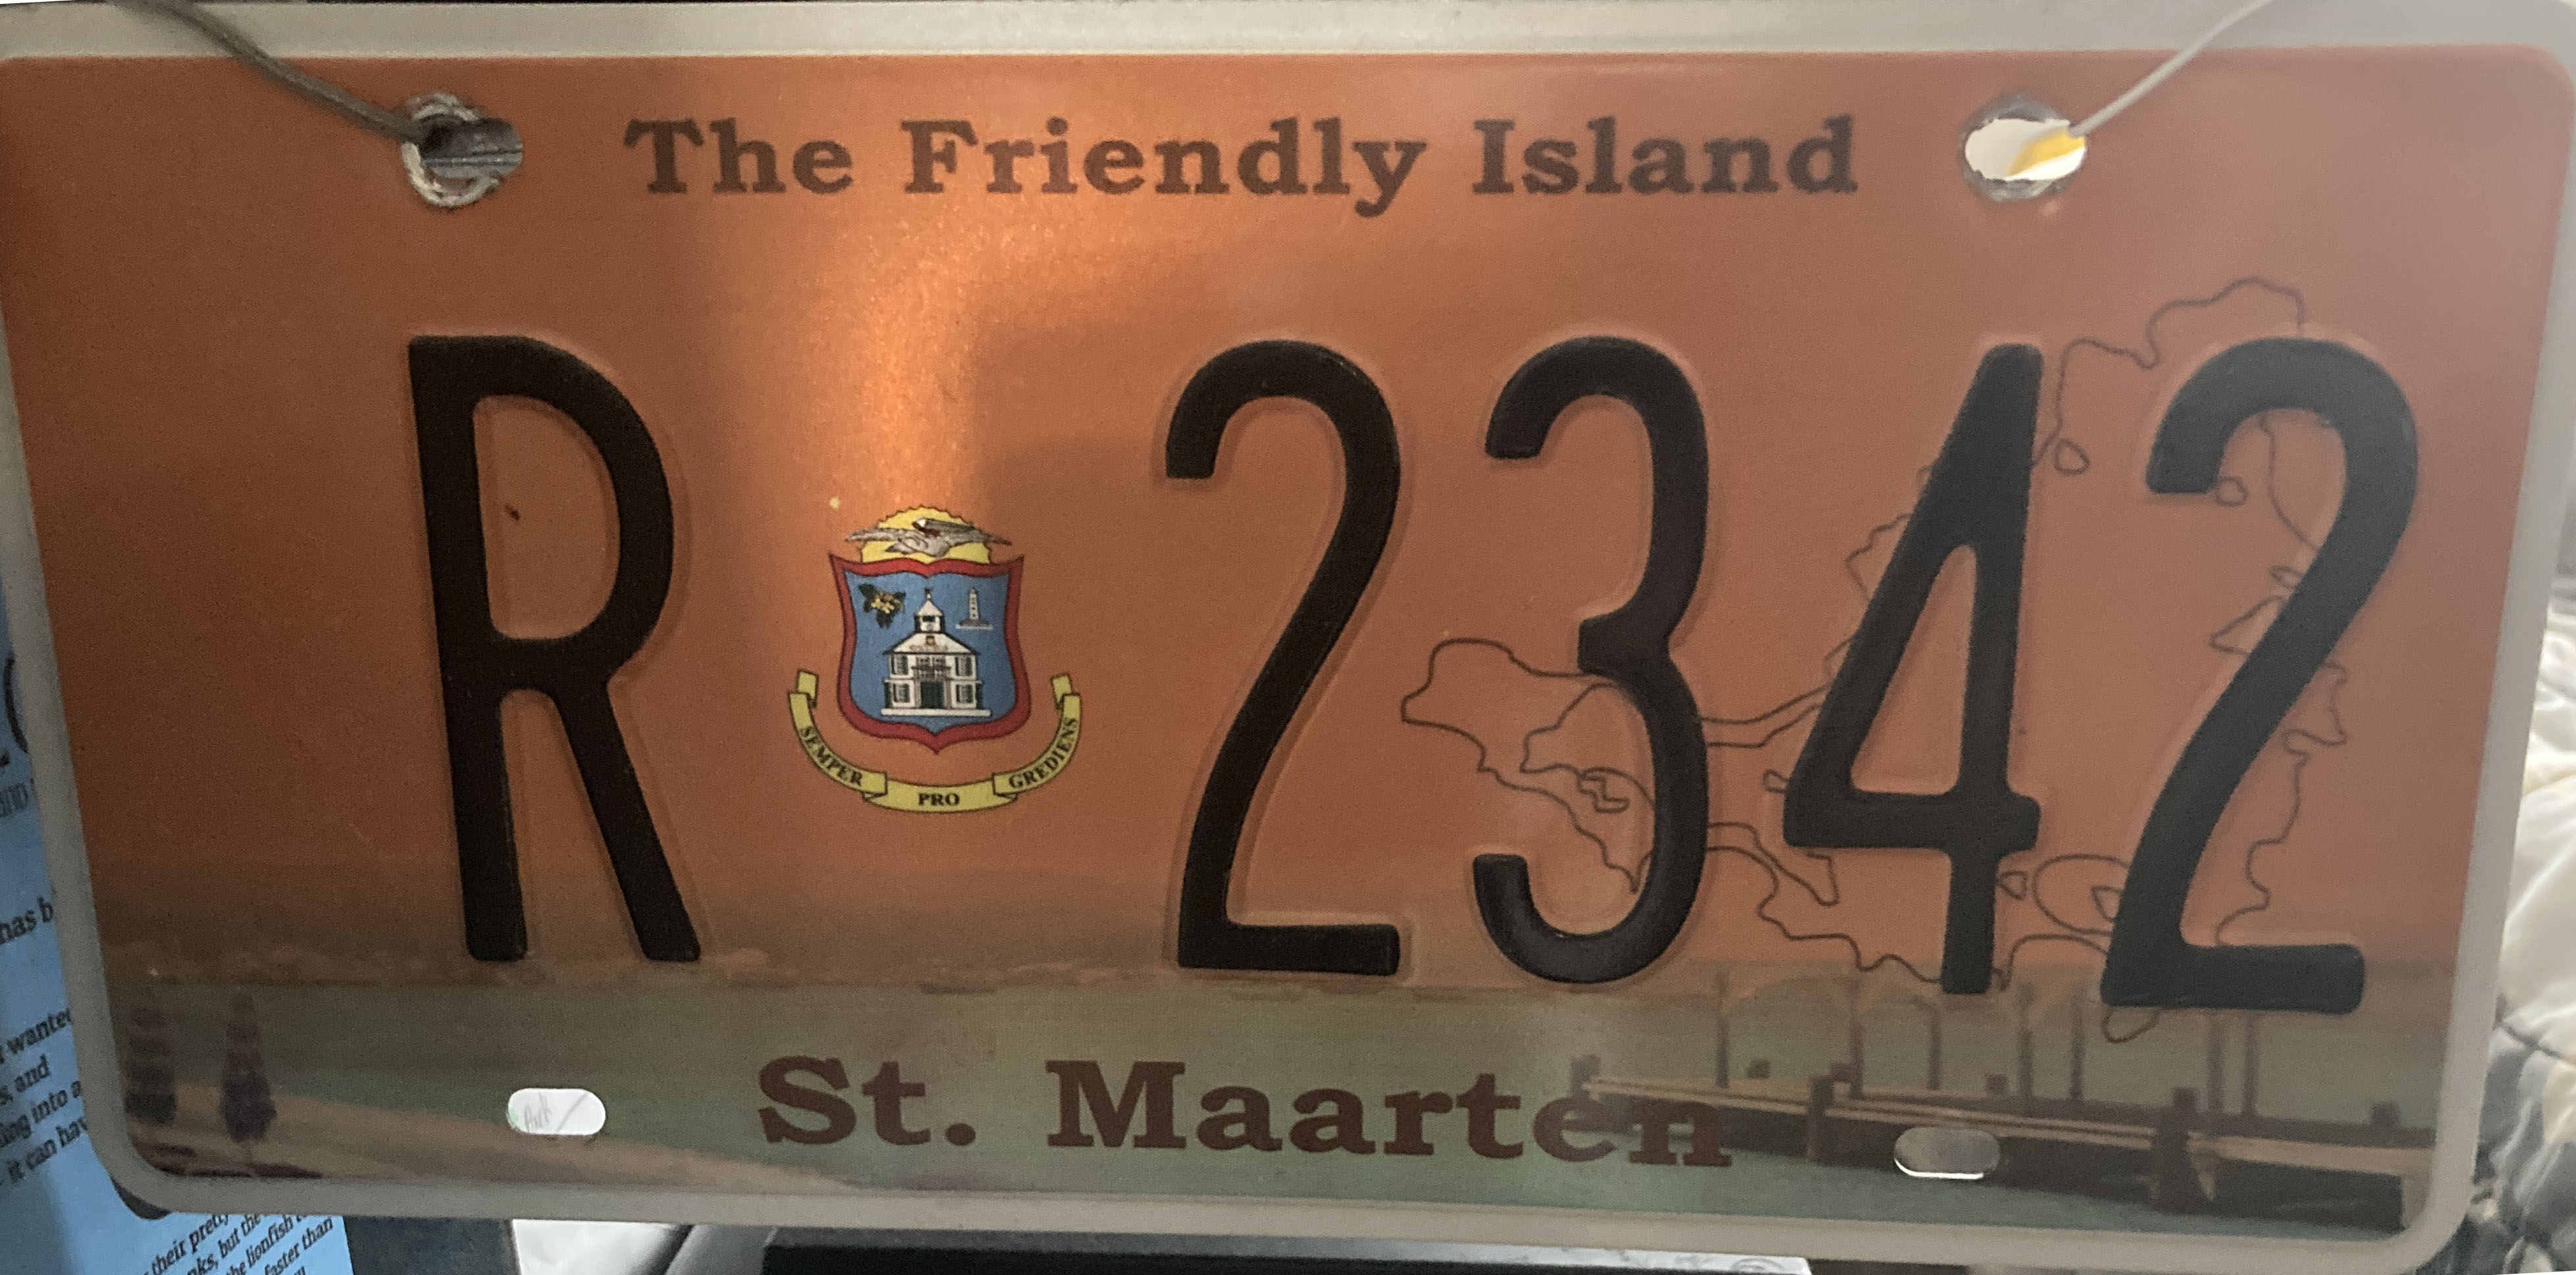 2015 Sint Maarten Plate